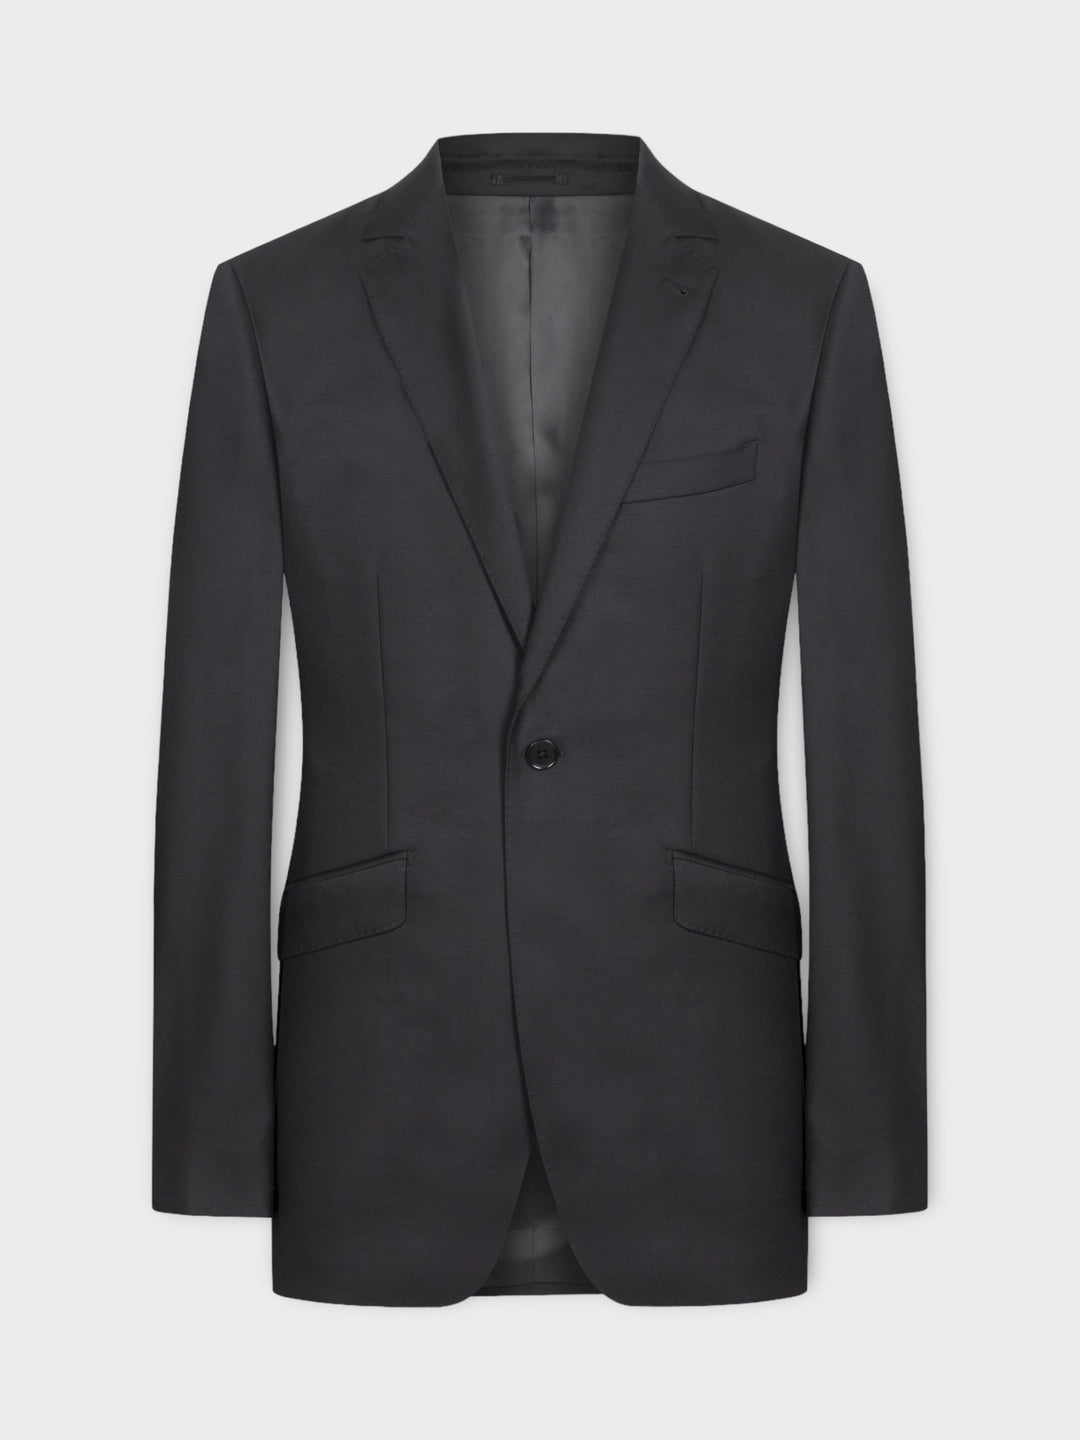 Plain Black Suit